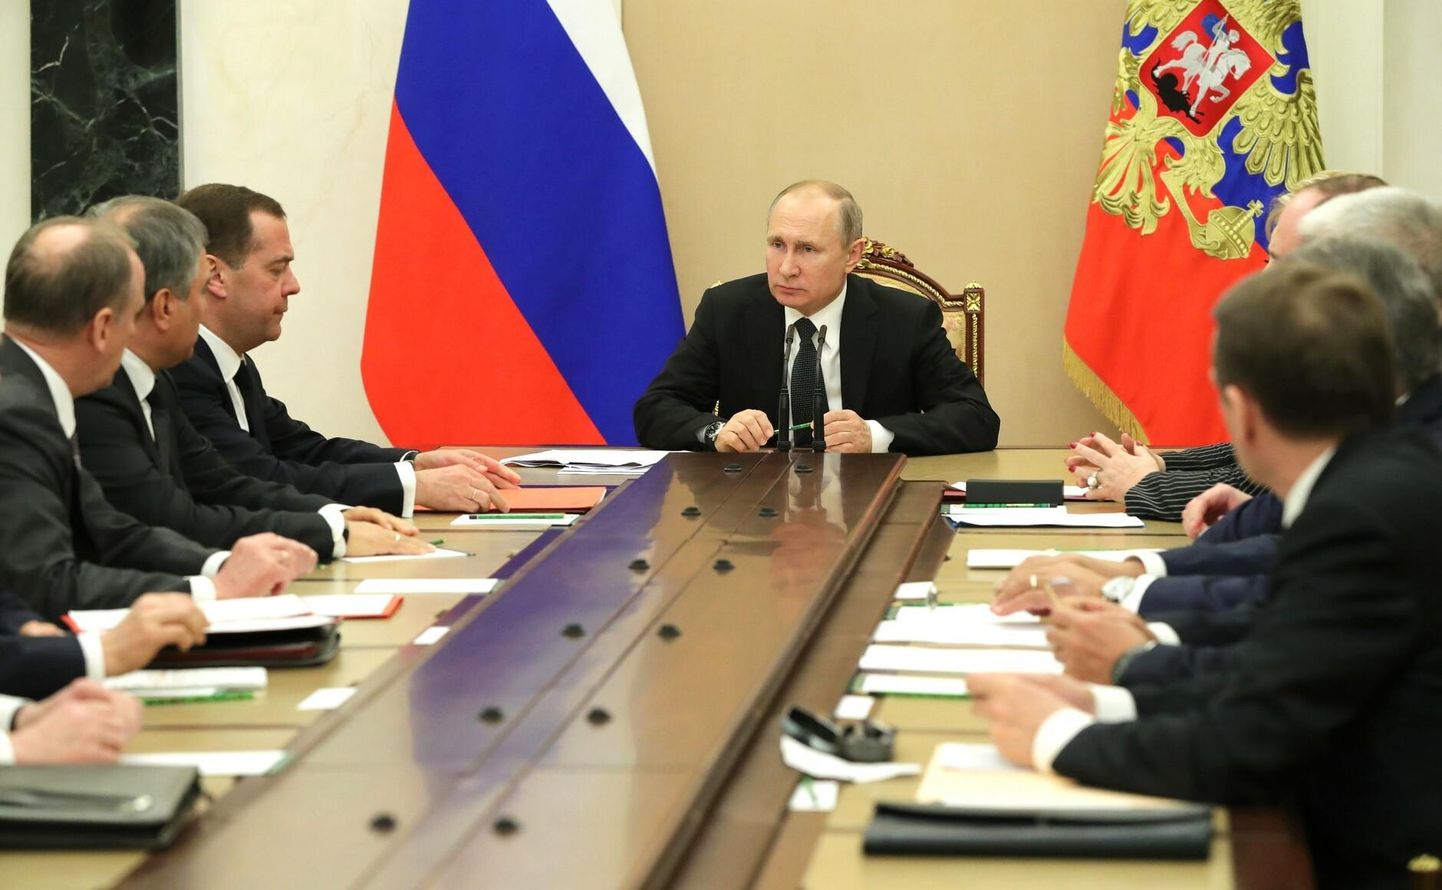 Venemaa julgeolekunõukogu istungil arutati aktuaalseid julgeolekuga seotud küsimusi.